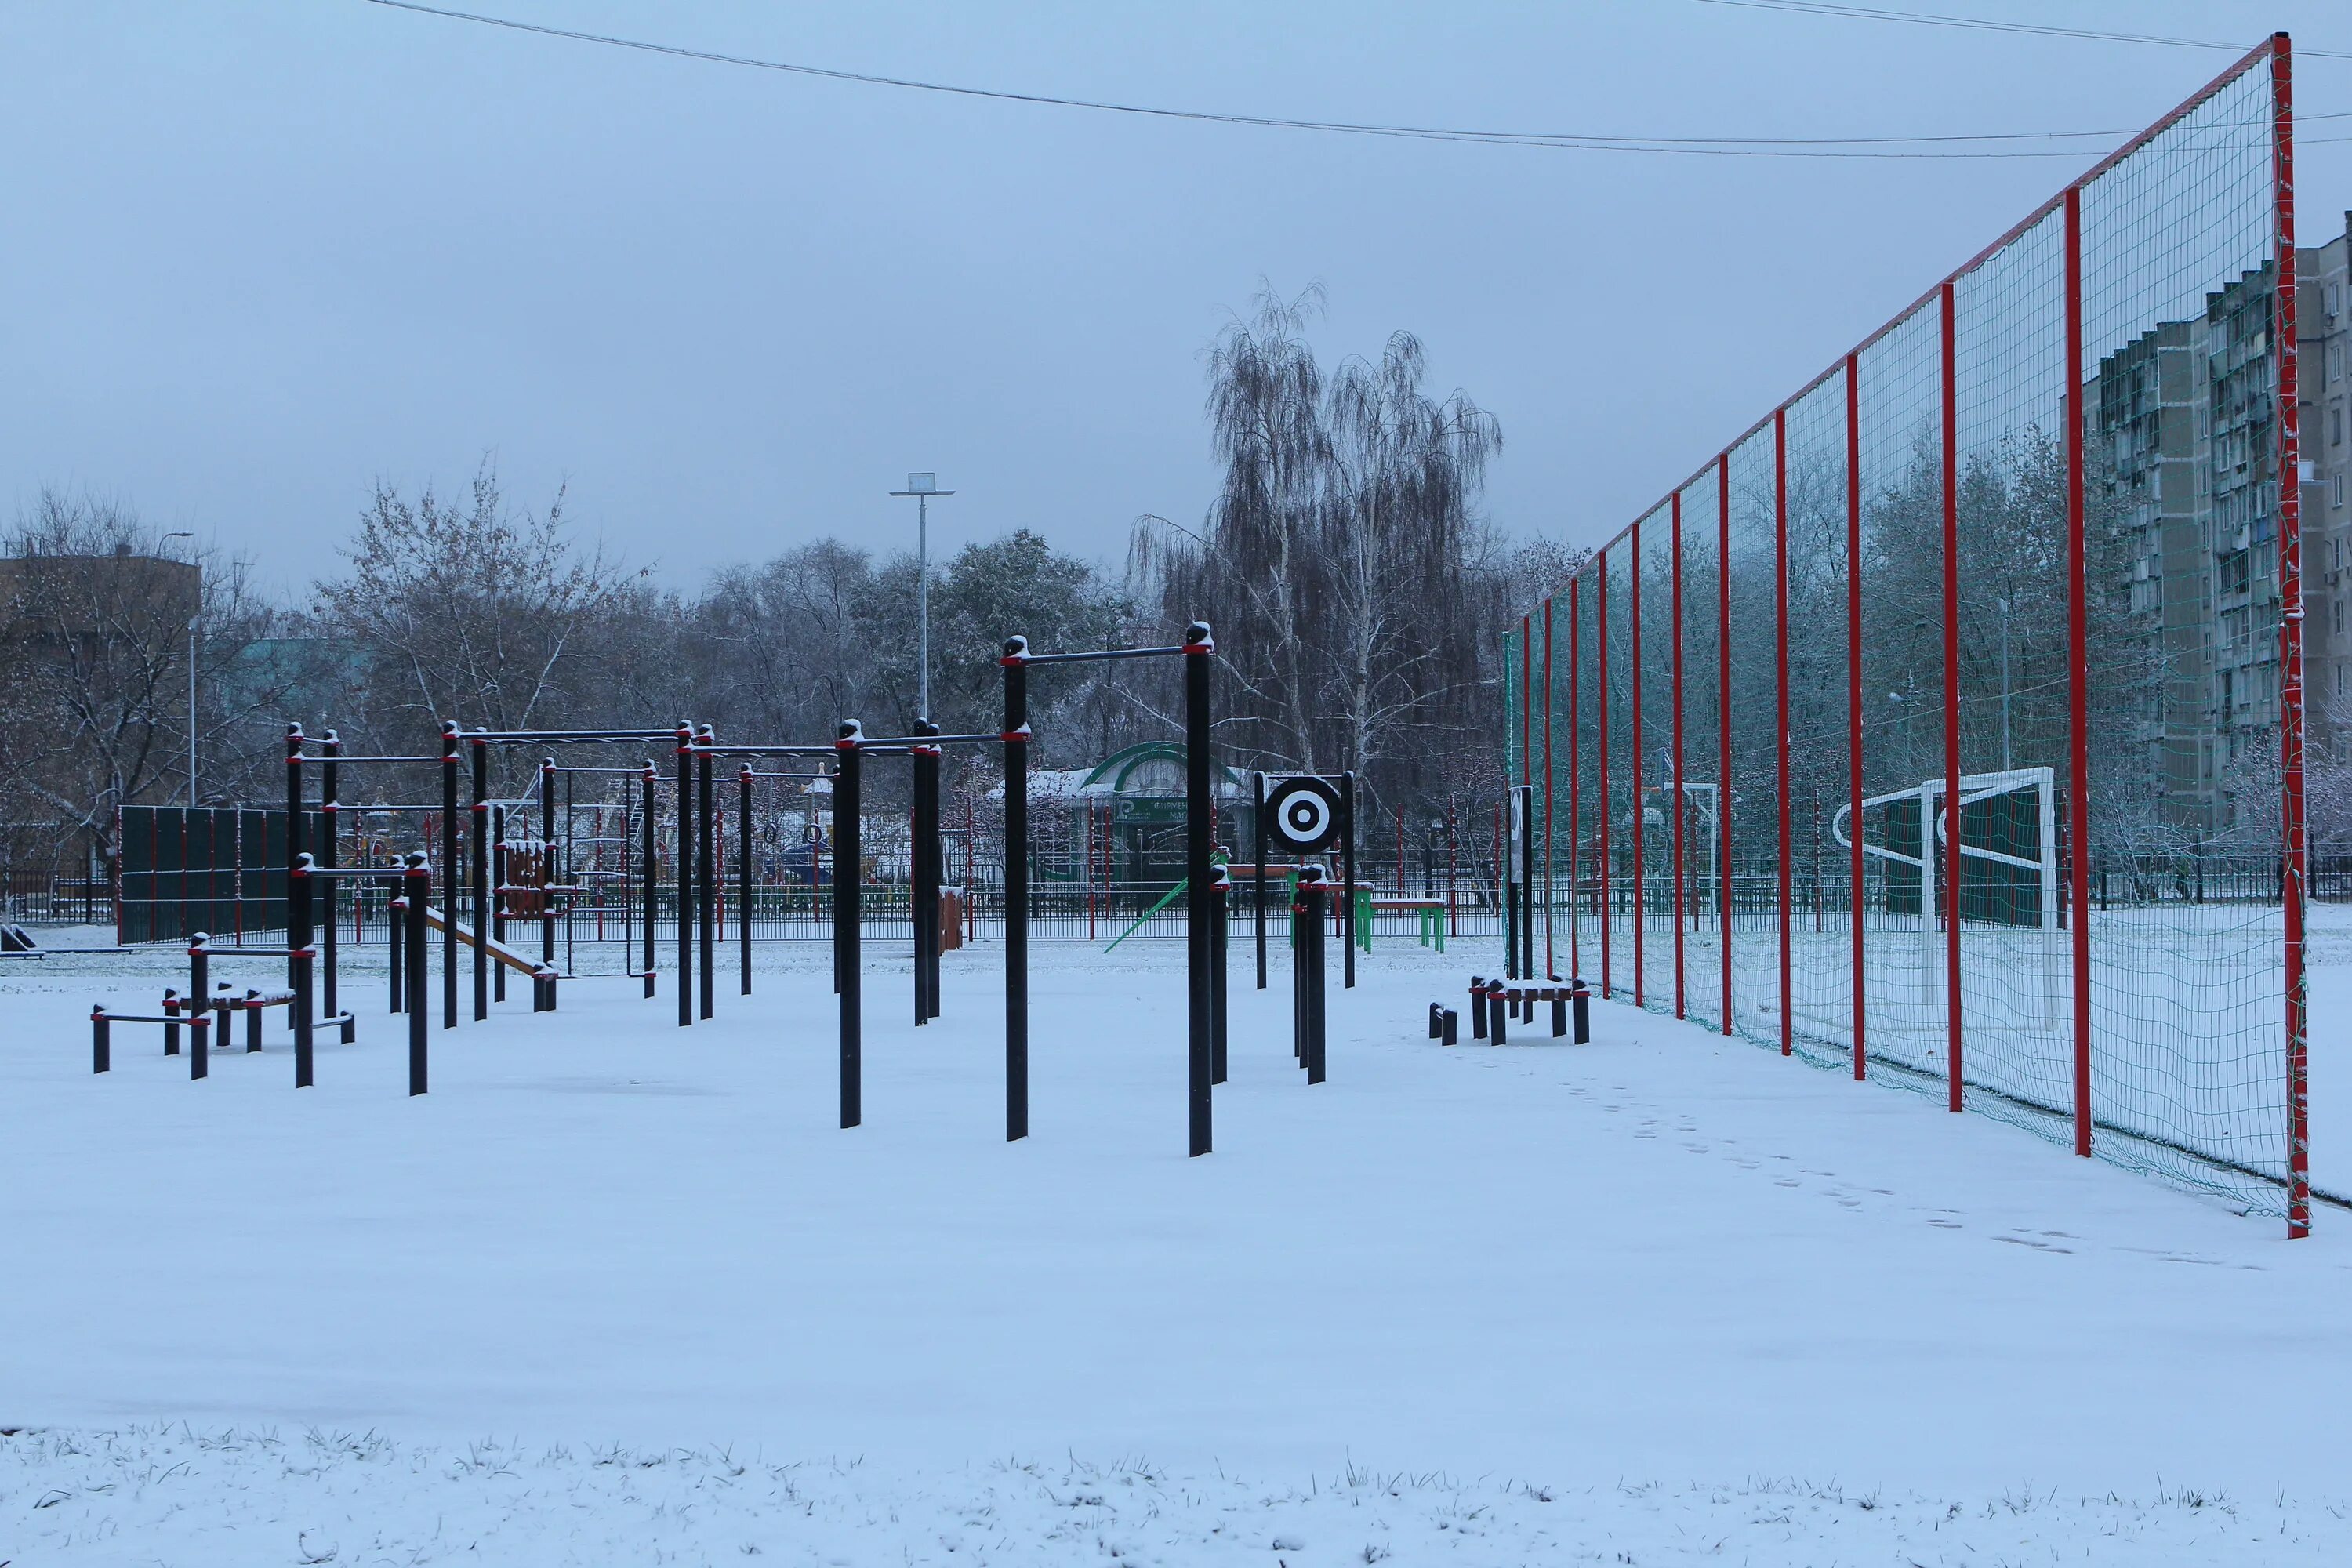 Спортивная площадка в школе нормы. Мега Дыбенко парк воркаут площадка. Спортивная площадка зимой. Школьная спортивная площадка зимой.